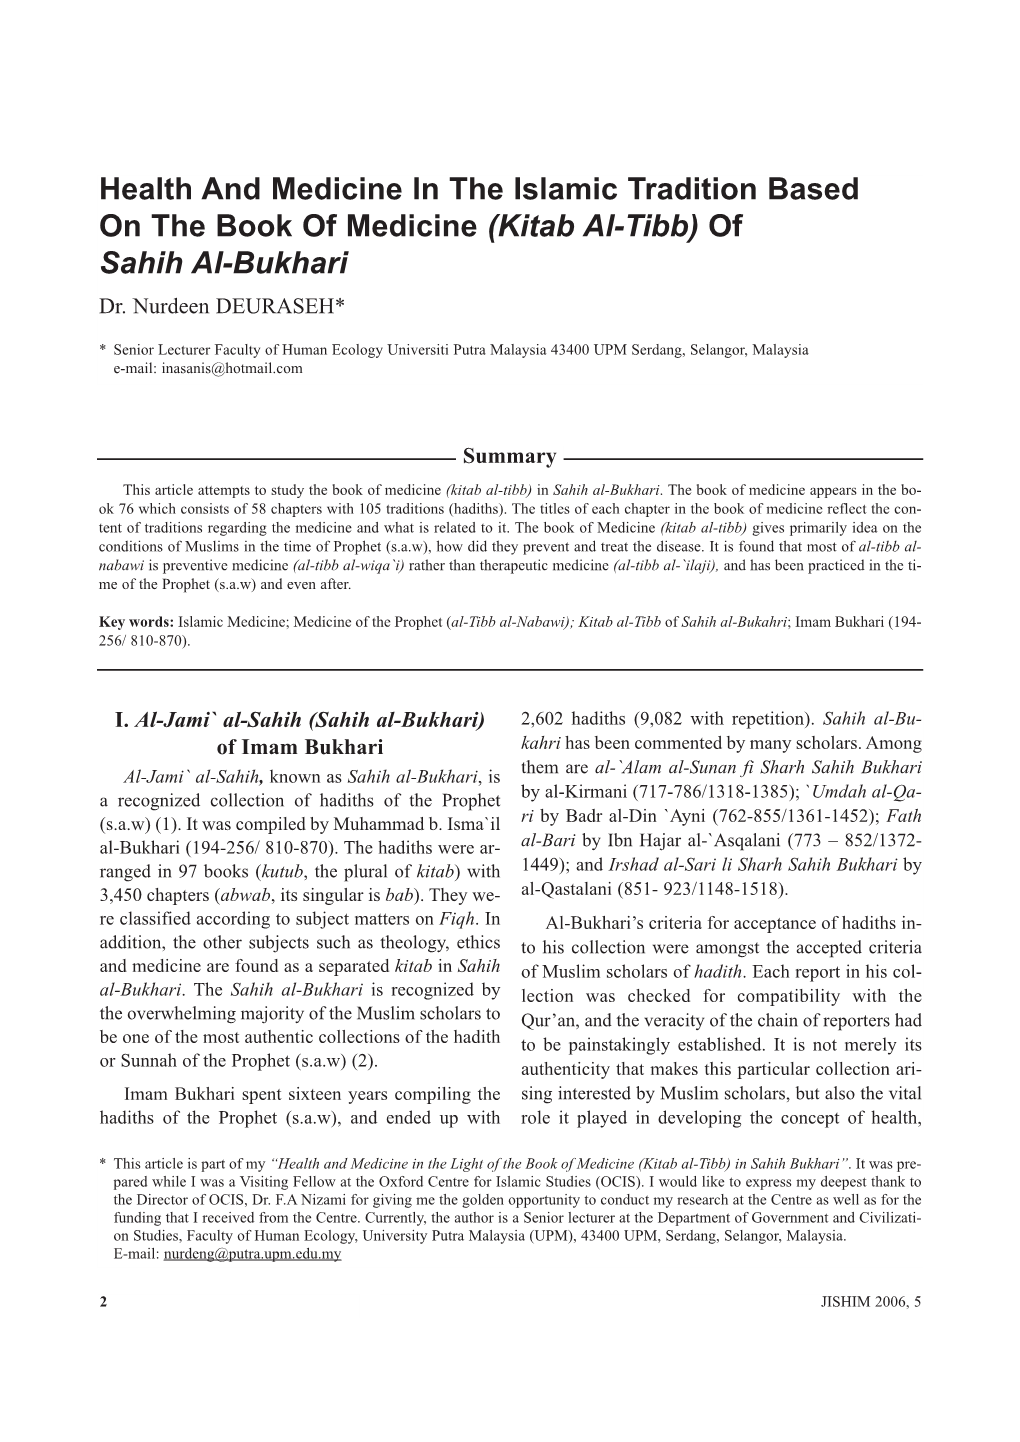 Kitab Al-Tibb) of Sahih Al-Bukhari Dr